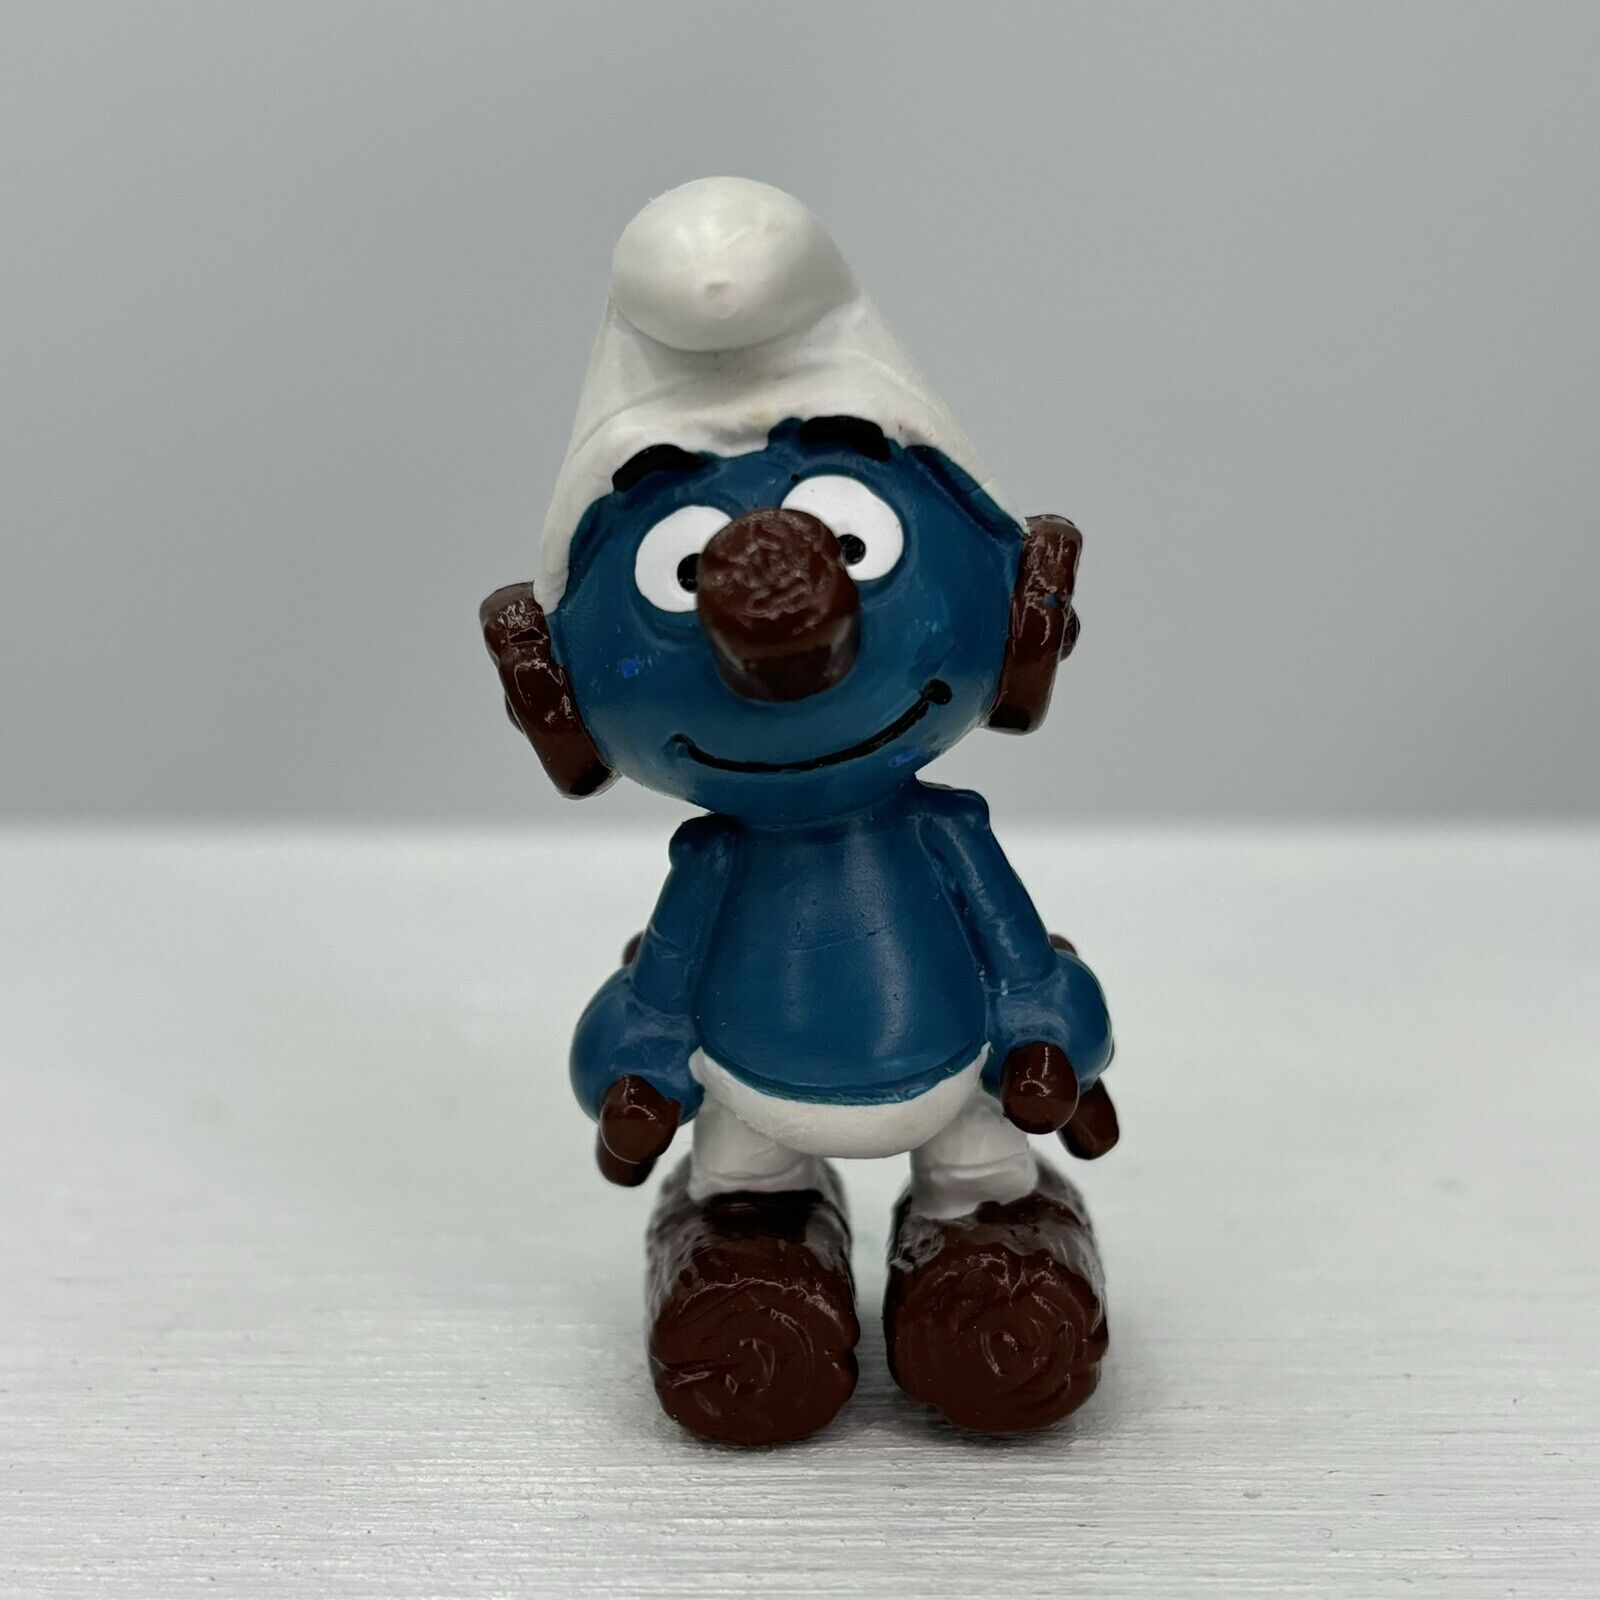 Smurfs 20175 Clockwork Smurf Robot Friend Vtg PVC Figure Schleich Peyo Figurine